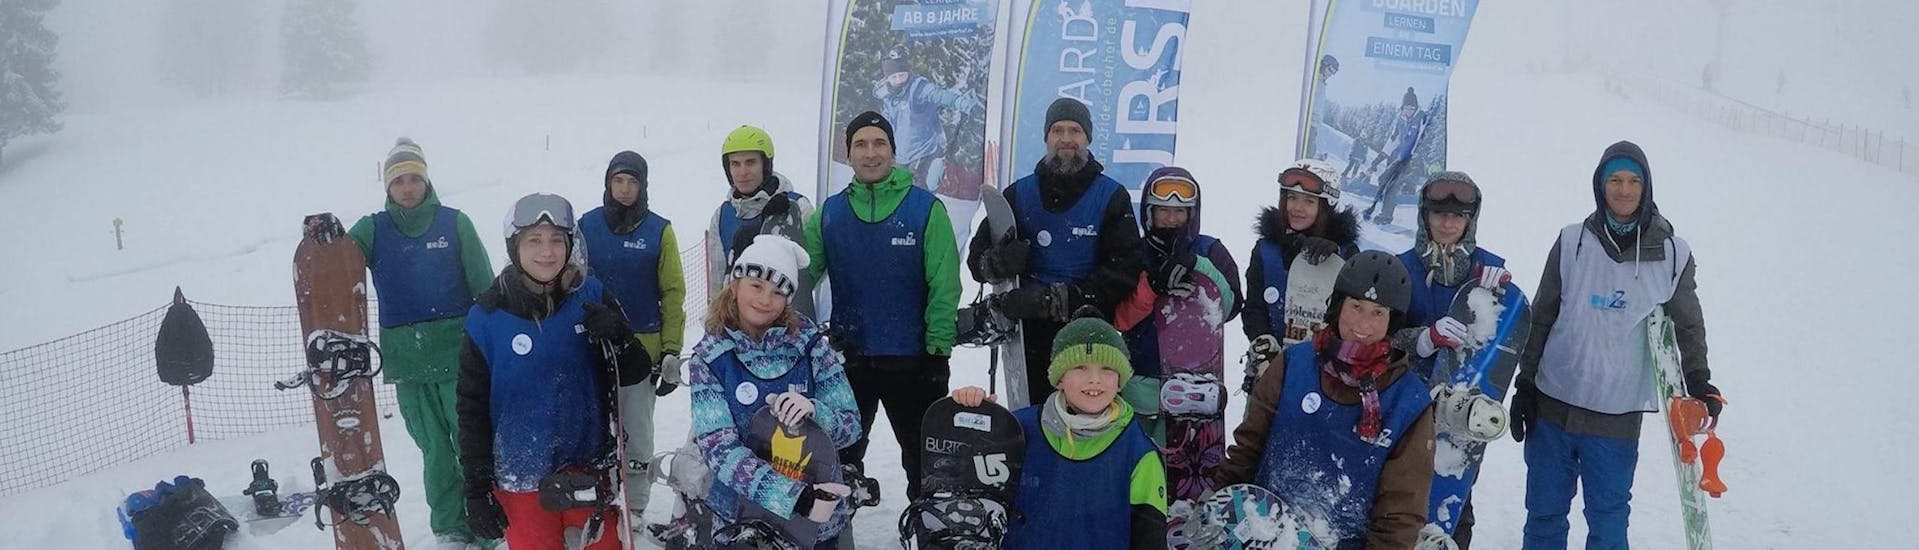 Snowboardkurs für Kinder &amp; Erwachsene - Schnupperkurs mit Learn2Ride Snowboardschule Oberhof - Hero image